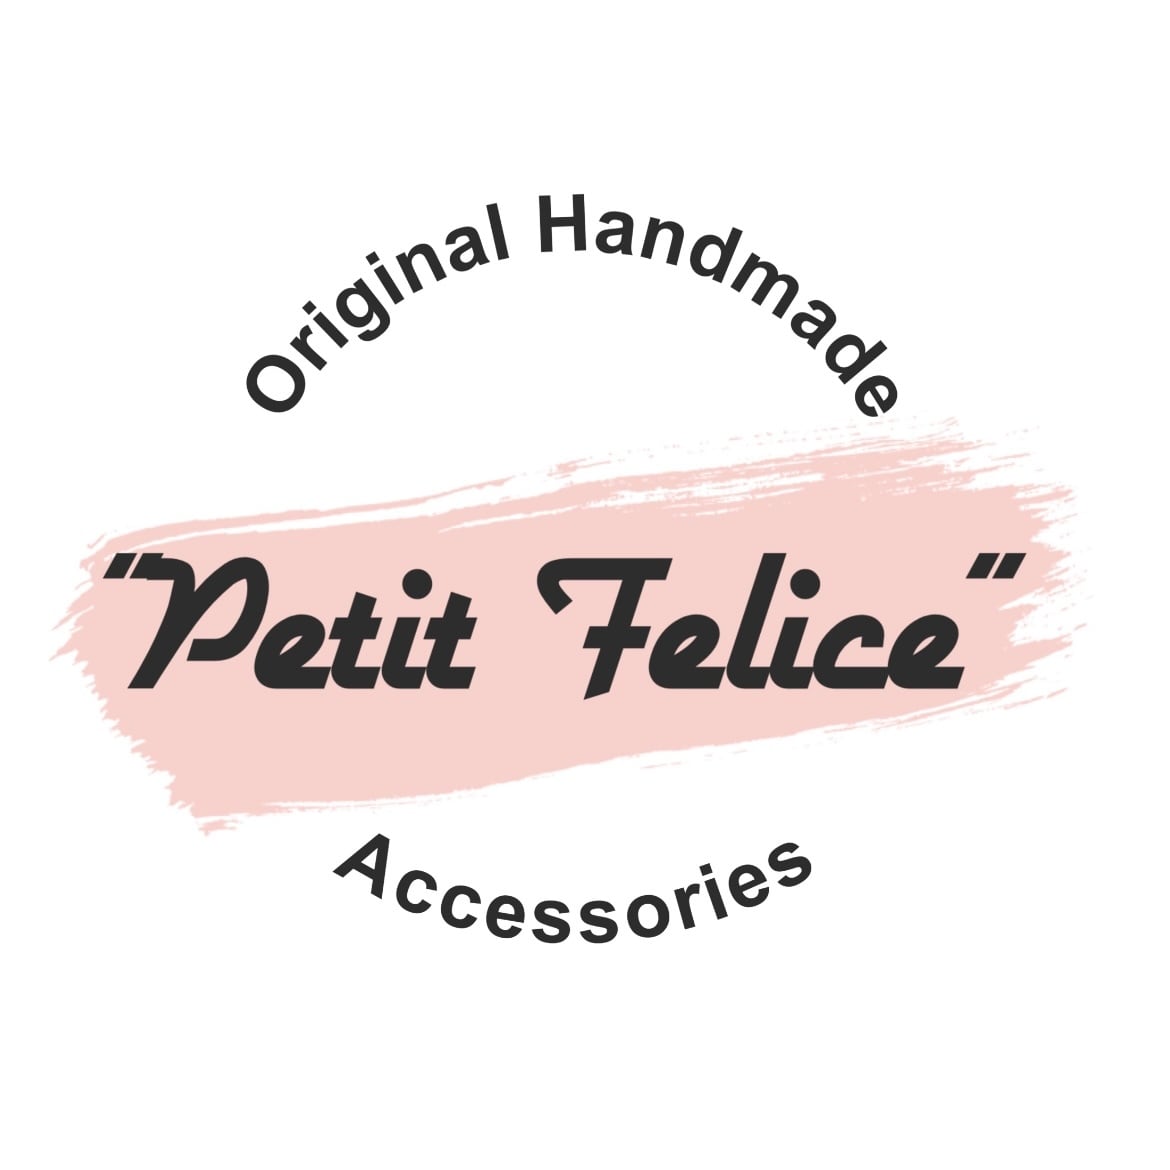 Original Handmade Accessories “Petit Felice”